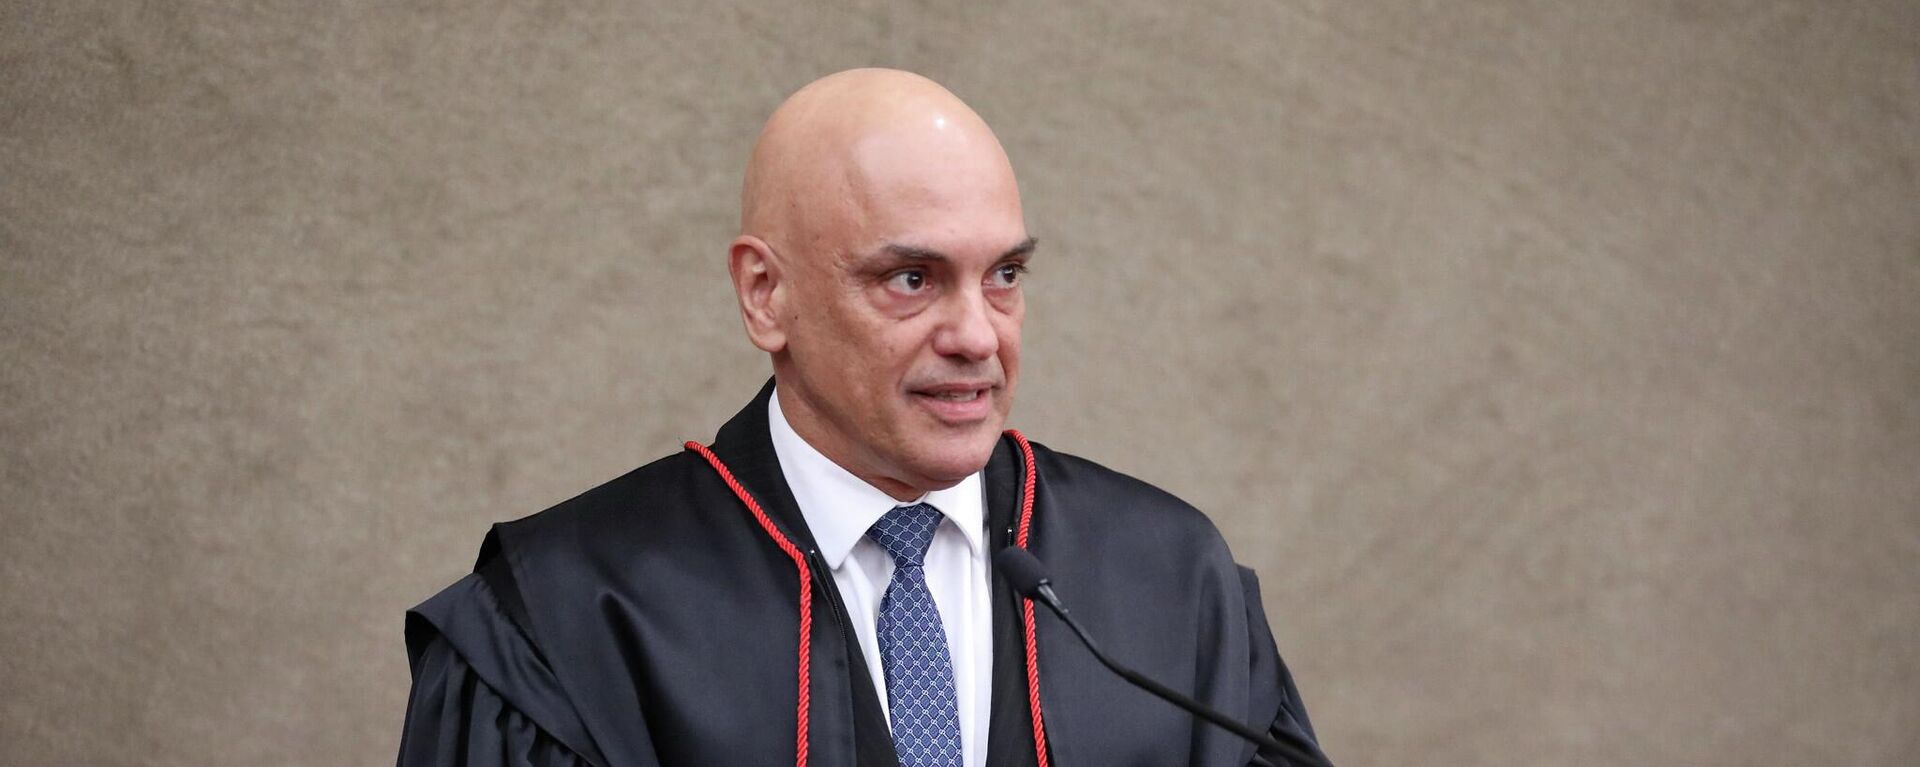 O ministro do Supremo Tribunal Federal (STF) Alexandre de Moraes toma posse como presidente do Tribunal Superior Eleitoral (TSE) - Sputnik Brasil, 1920, 14.10.2022